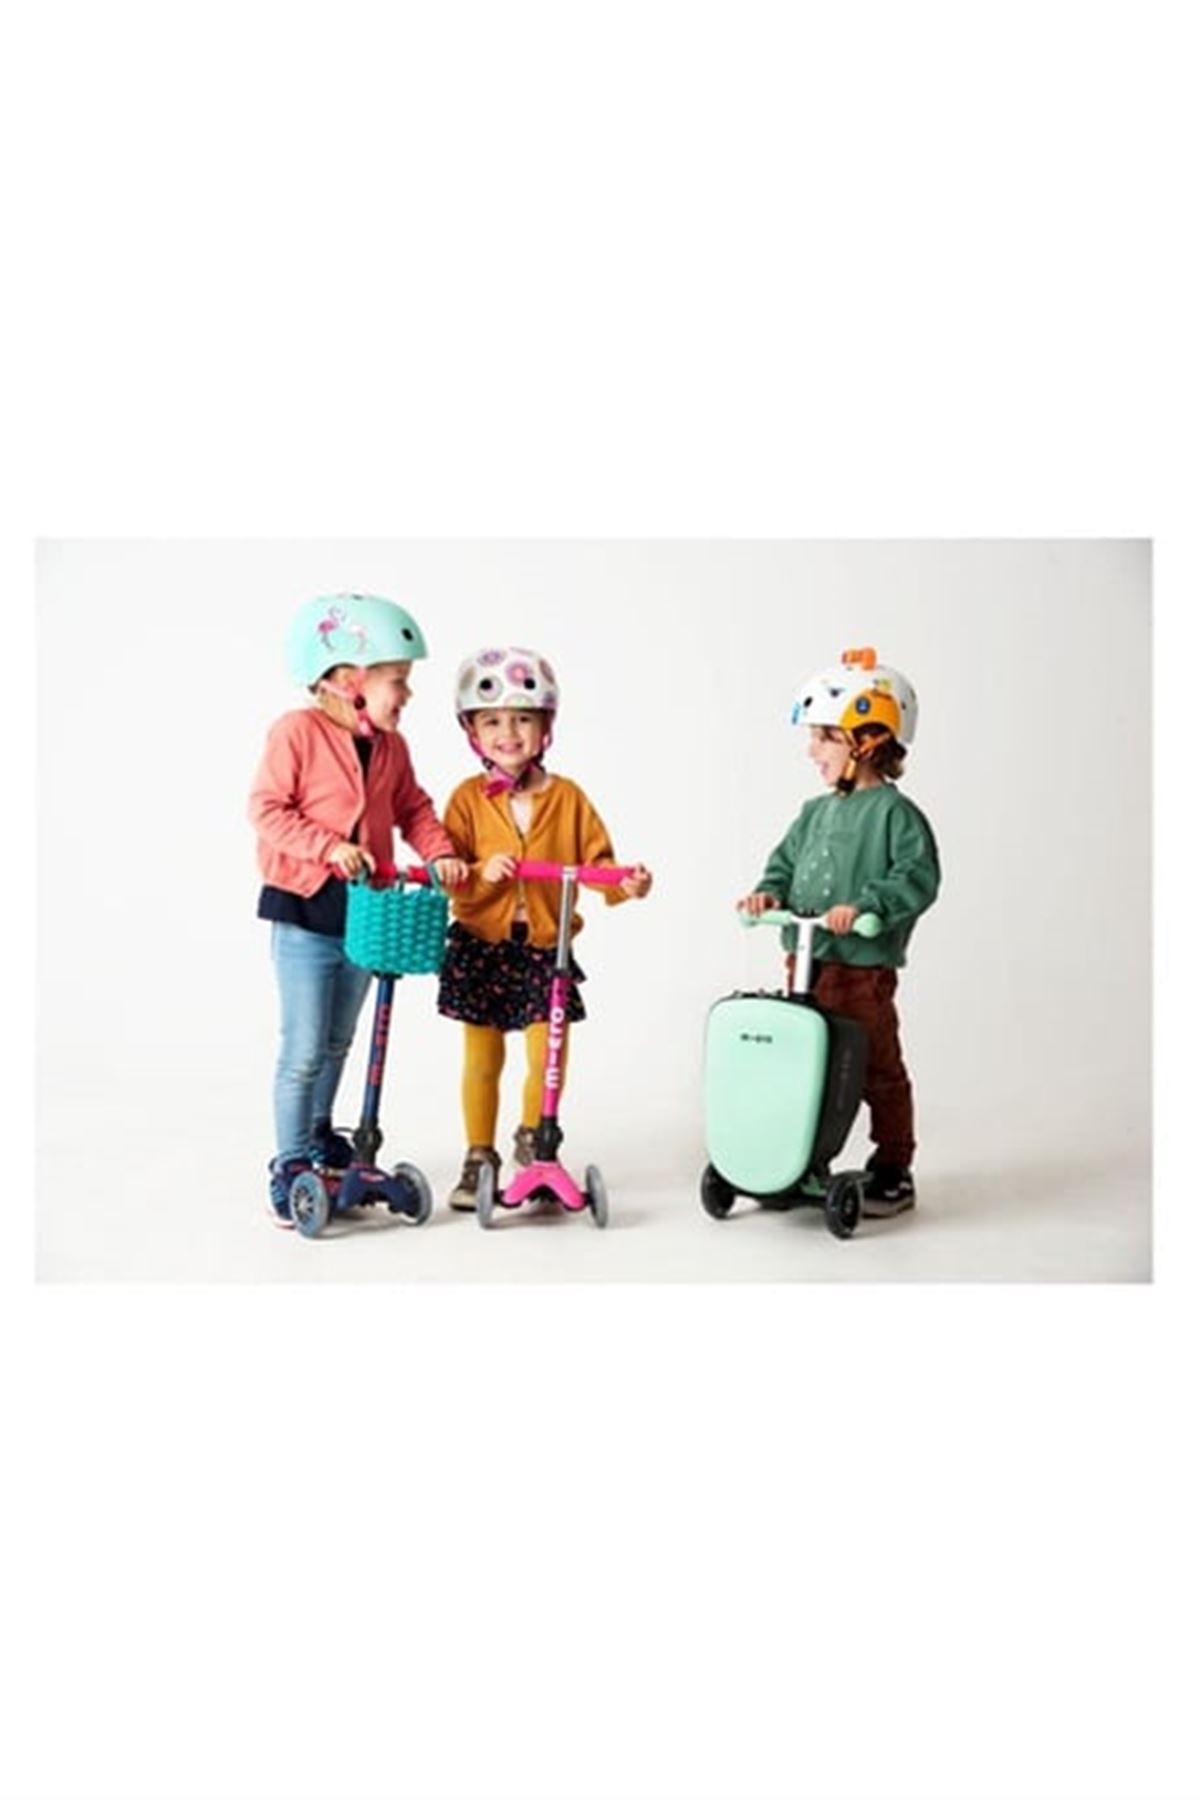 Micro Ride On Luggage Junior Scooter Bagaj Çanta